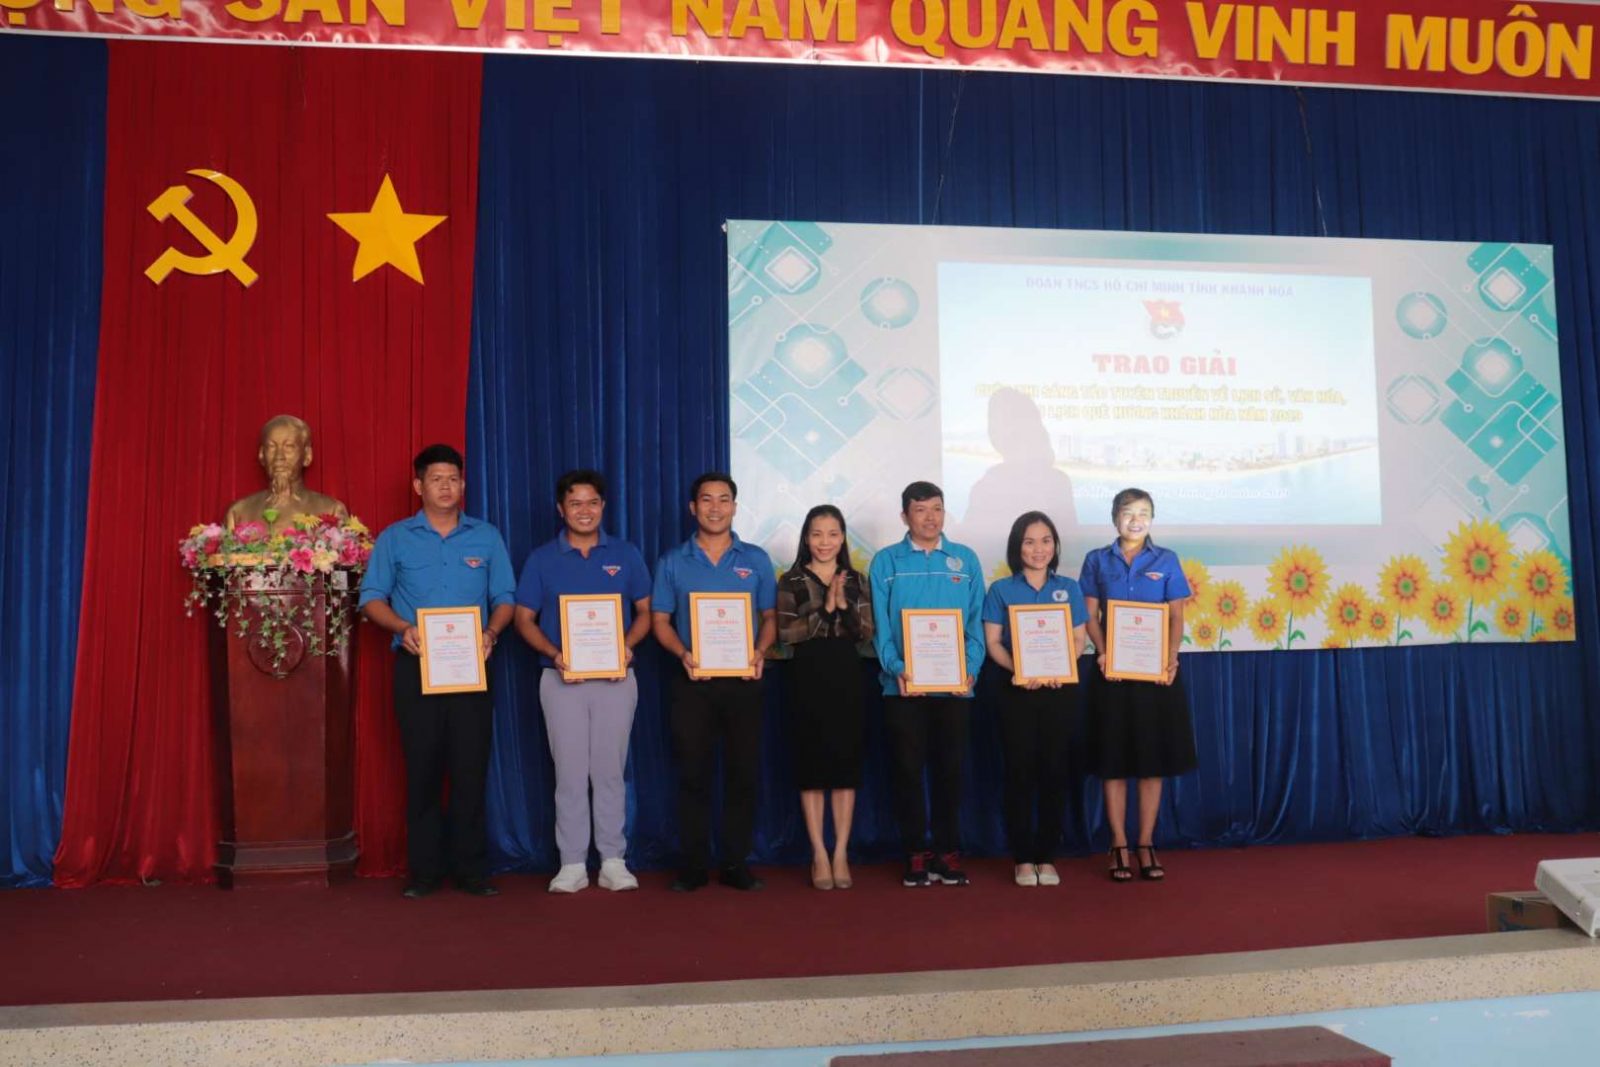 Đồng chí Nguyễn Ngọc Thảo - Ủy viên Ban Thường vụ Tỉnh đoàn, Trưởng Ban Tuyên giáo Tỉnh đoàn trao giải cho các tập thể, cá nhân đạt giải khuyến khích Cuộc thi.